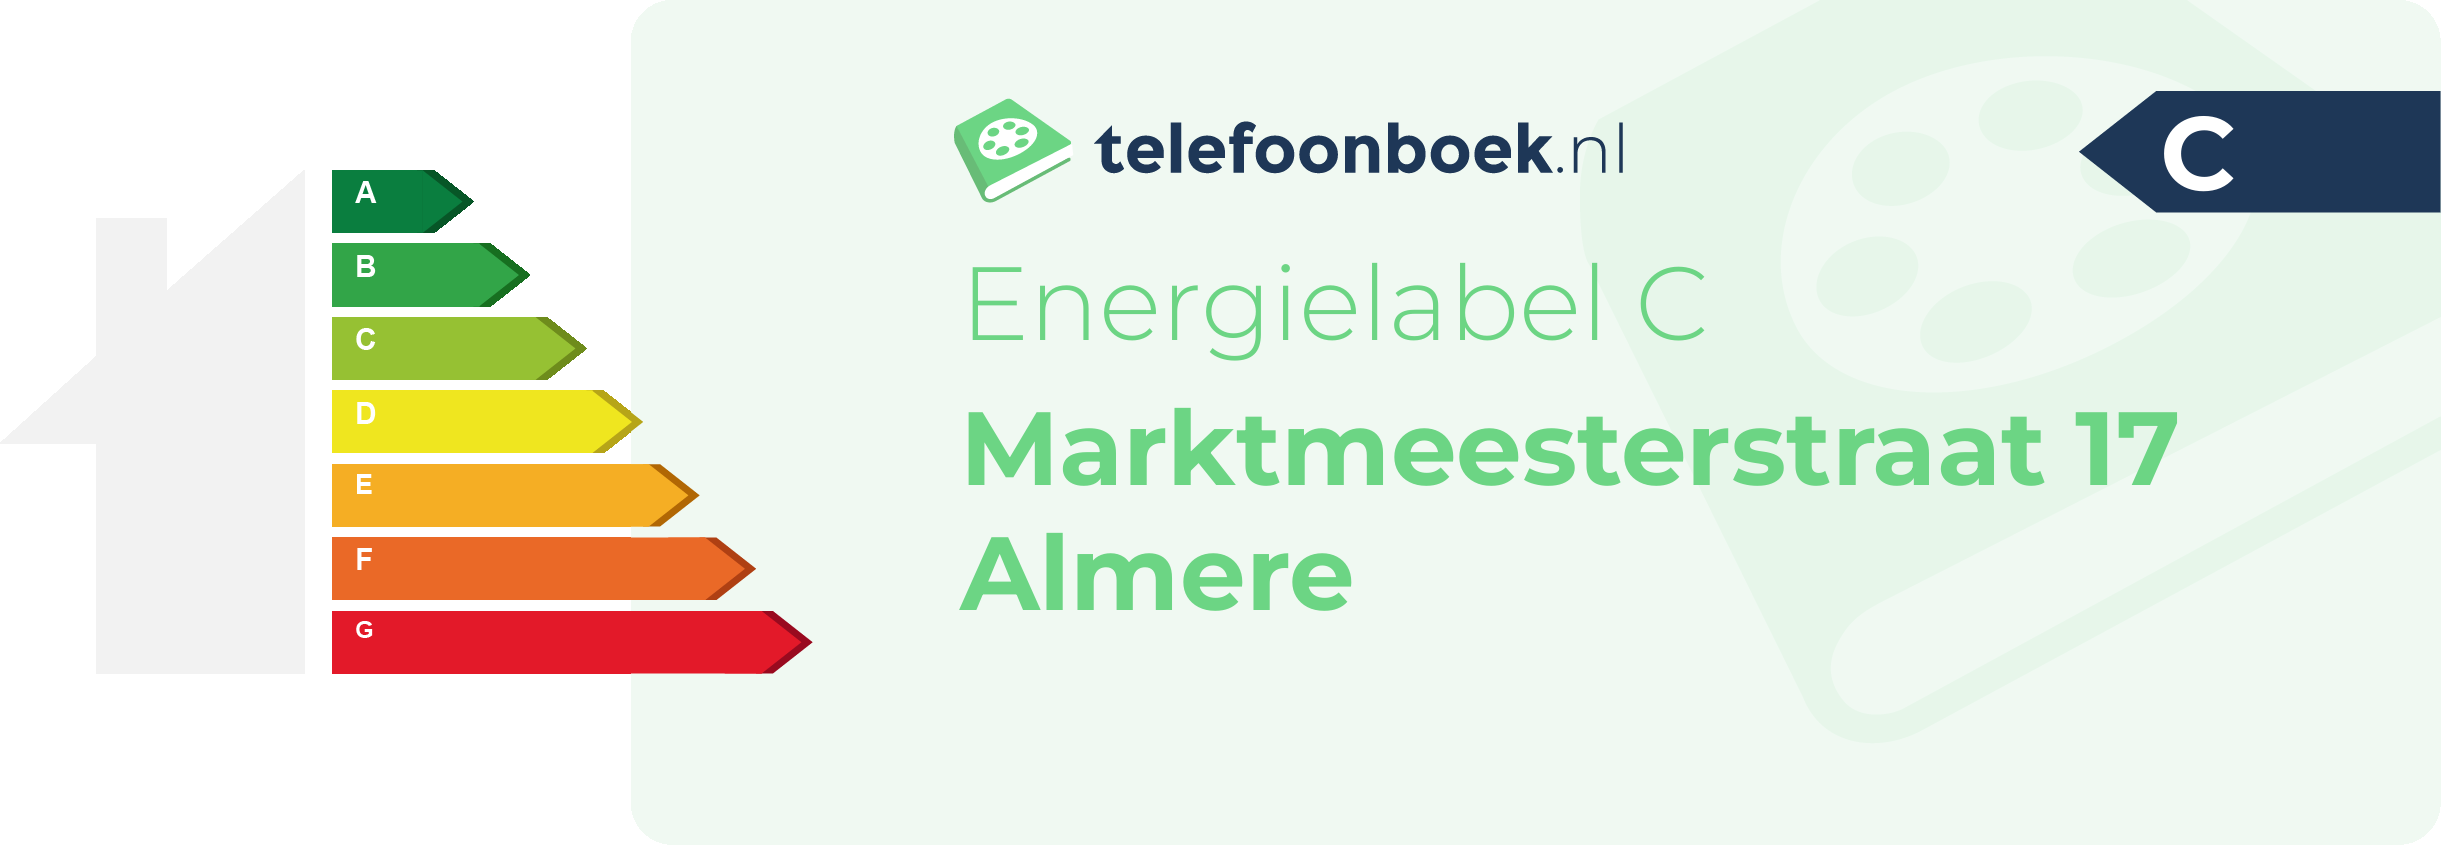 Energielabel Marktmeesterstraat 17 Almere